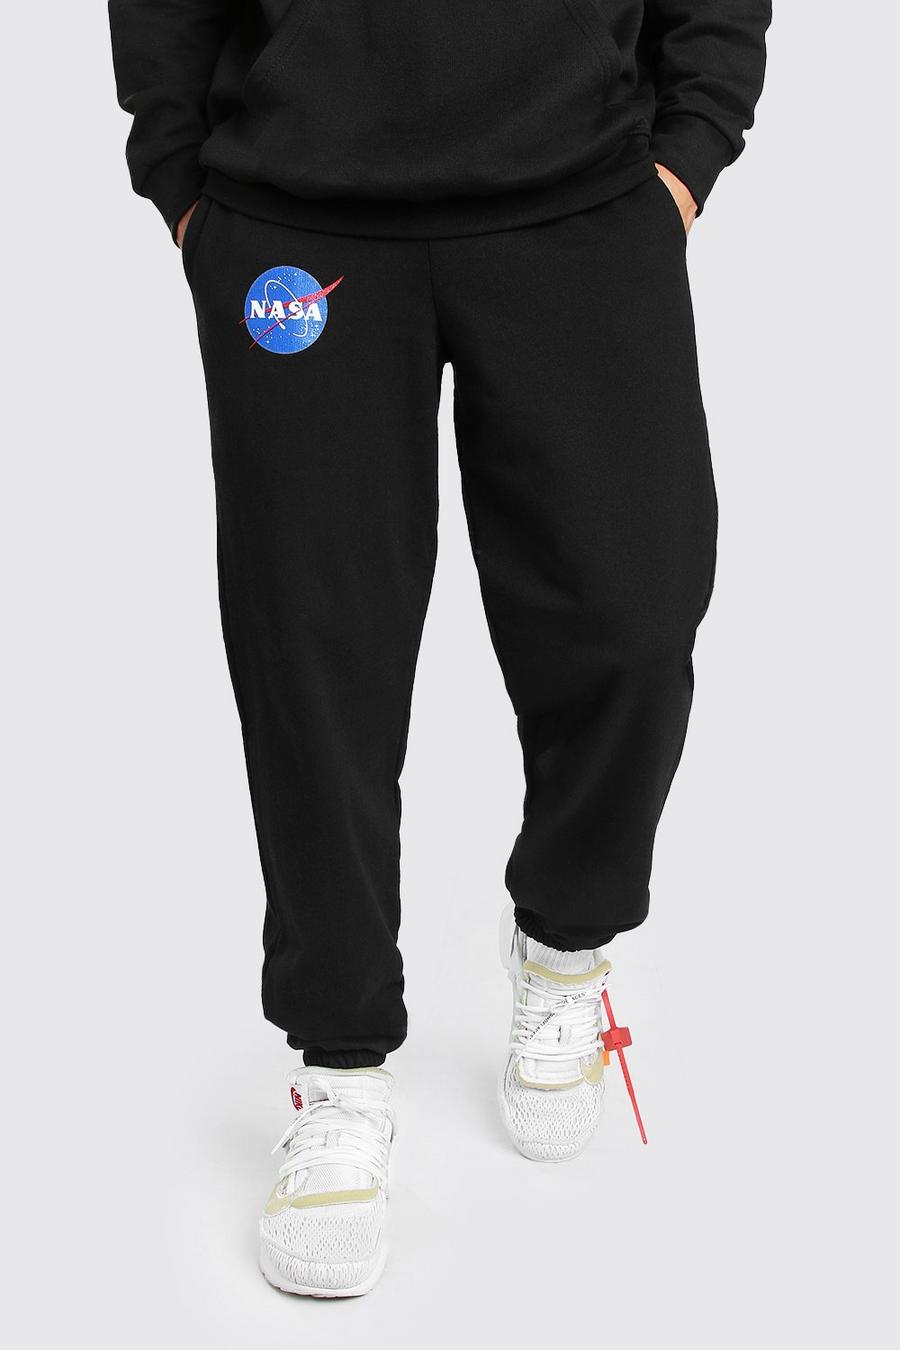 Pantalones de deporte con licencia y logotipo espacial NASA image number 1